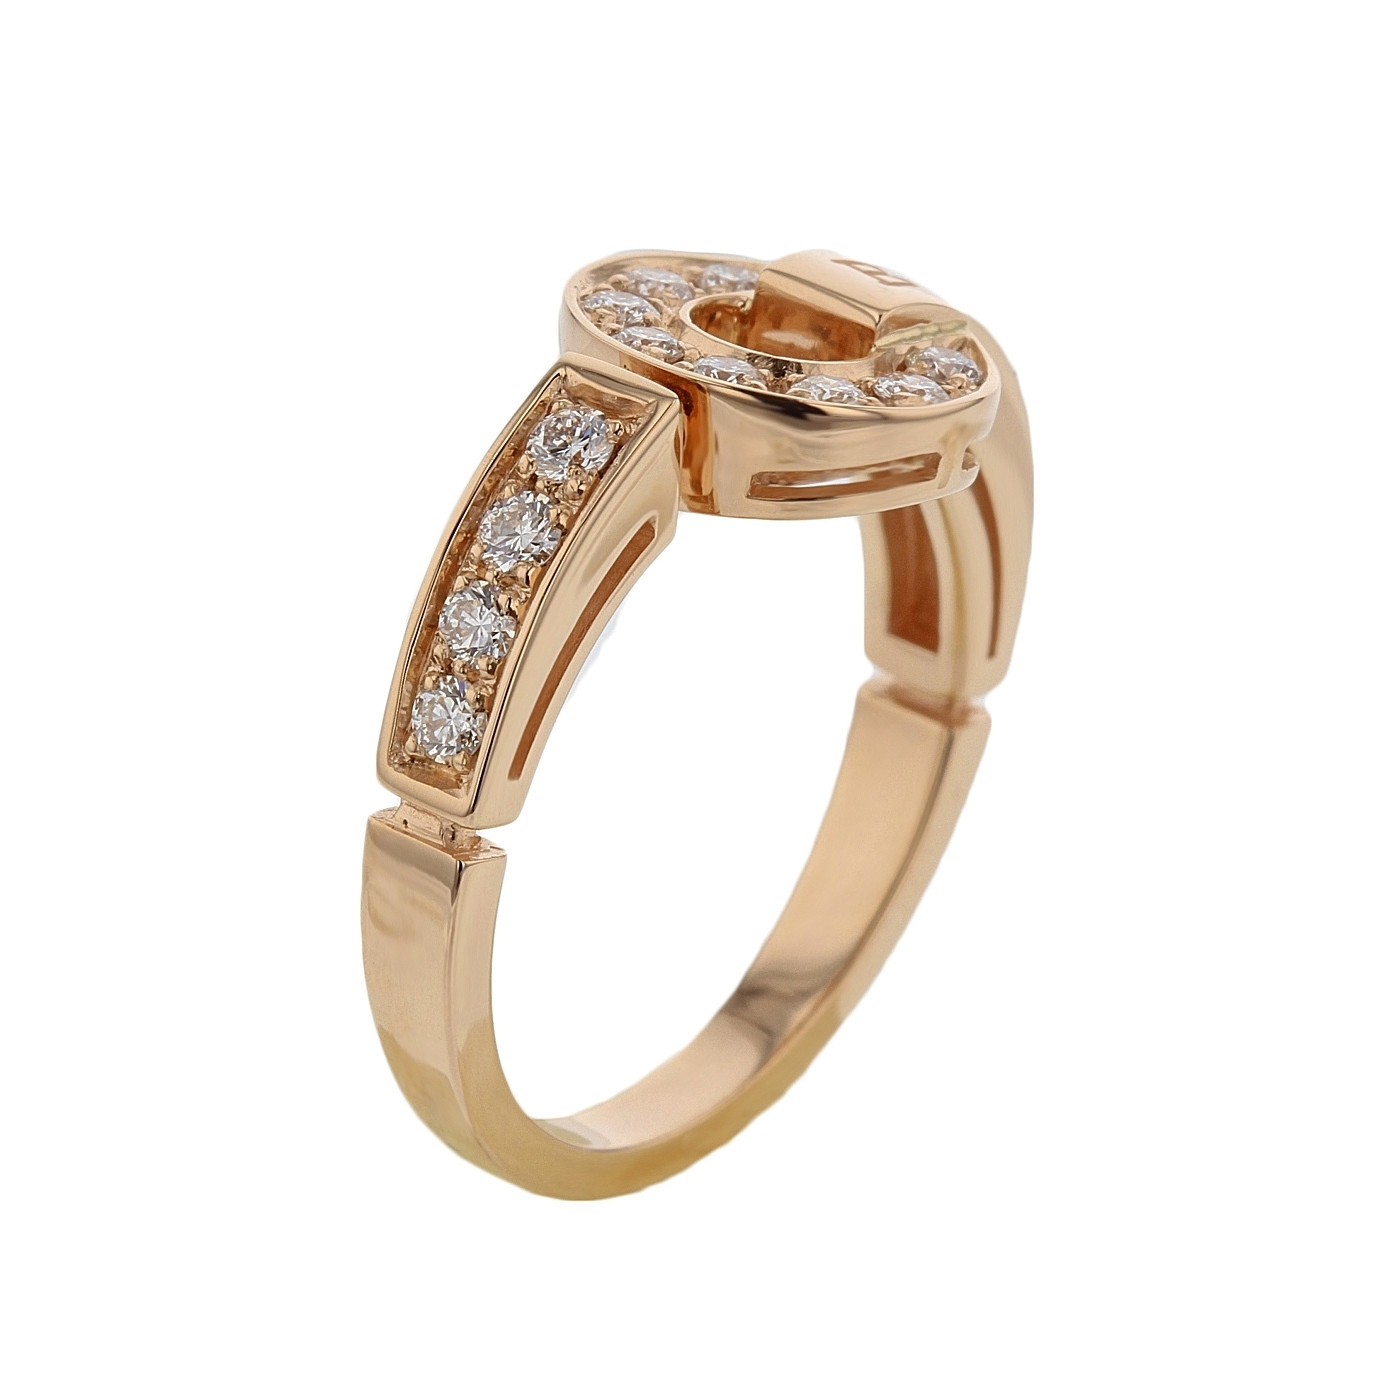 Bvlgari Wedding Rings
 Elegant bvlgari wedding ring price Matvuk